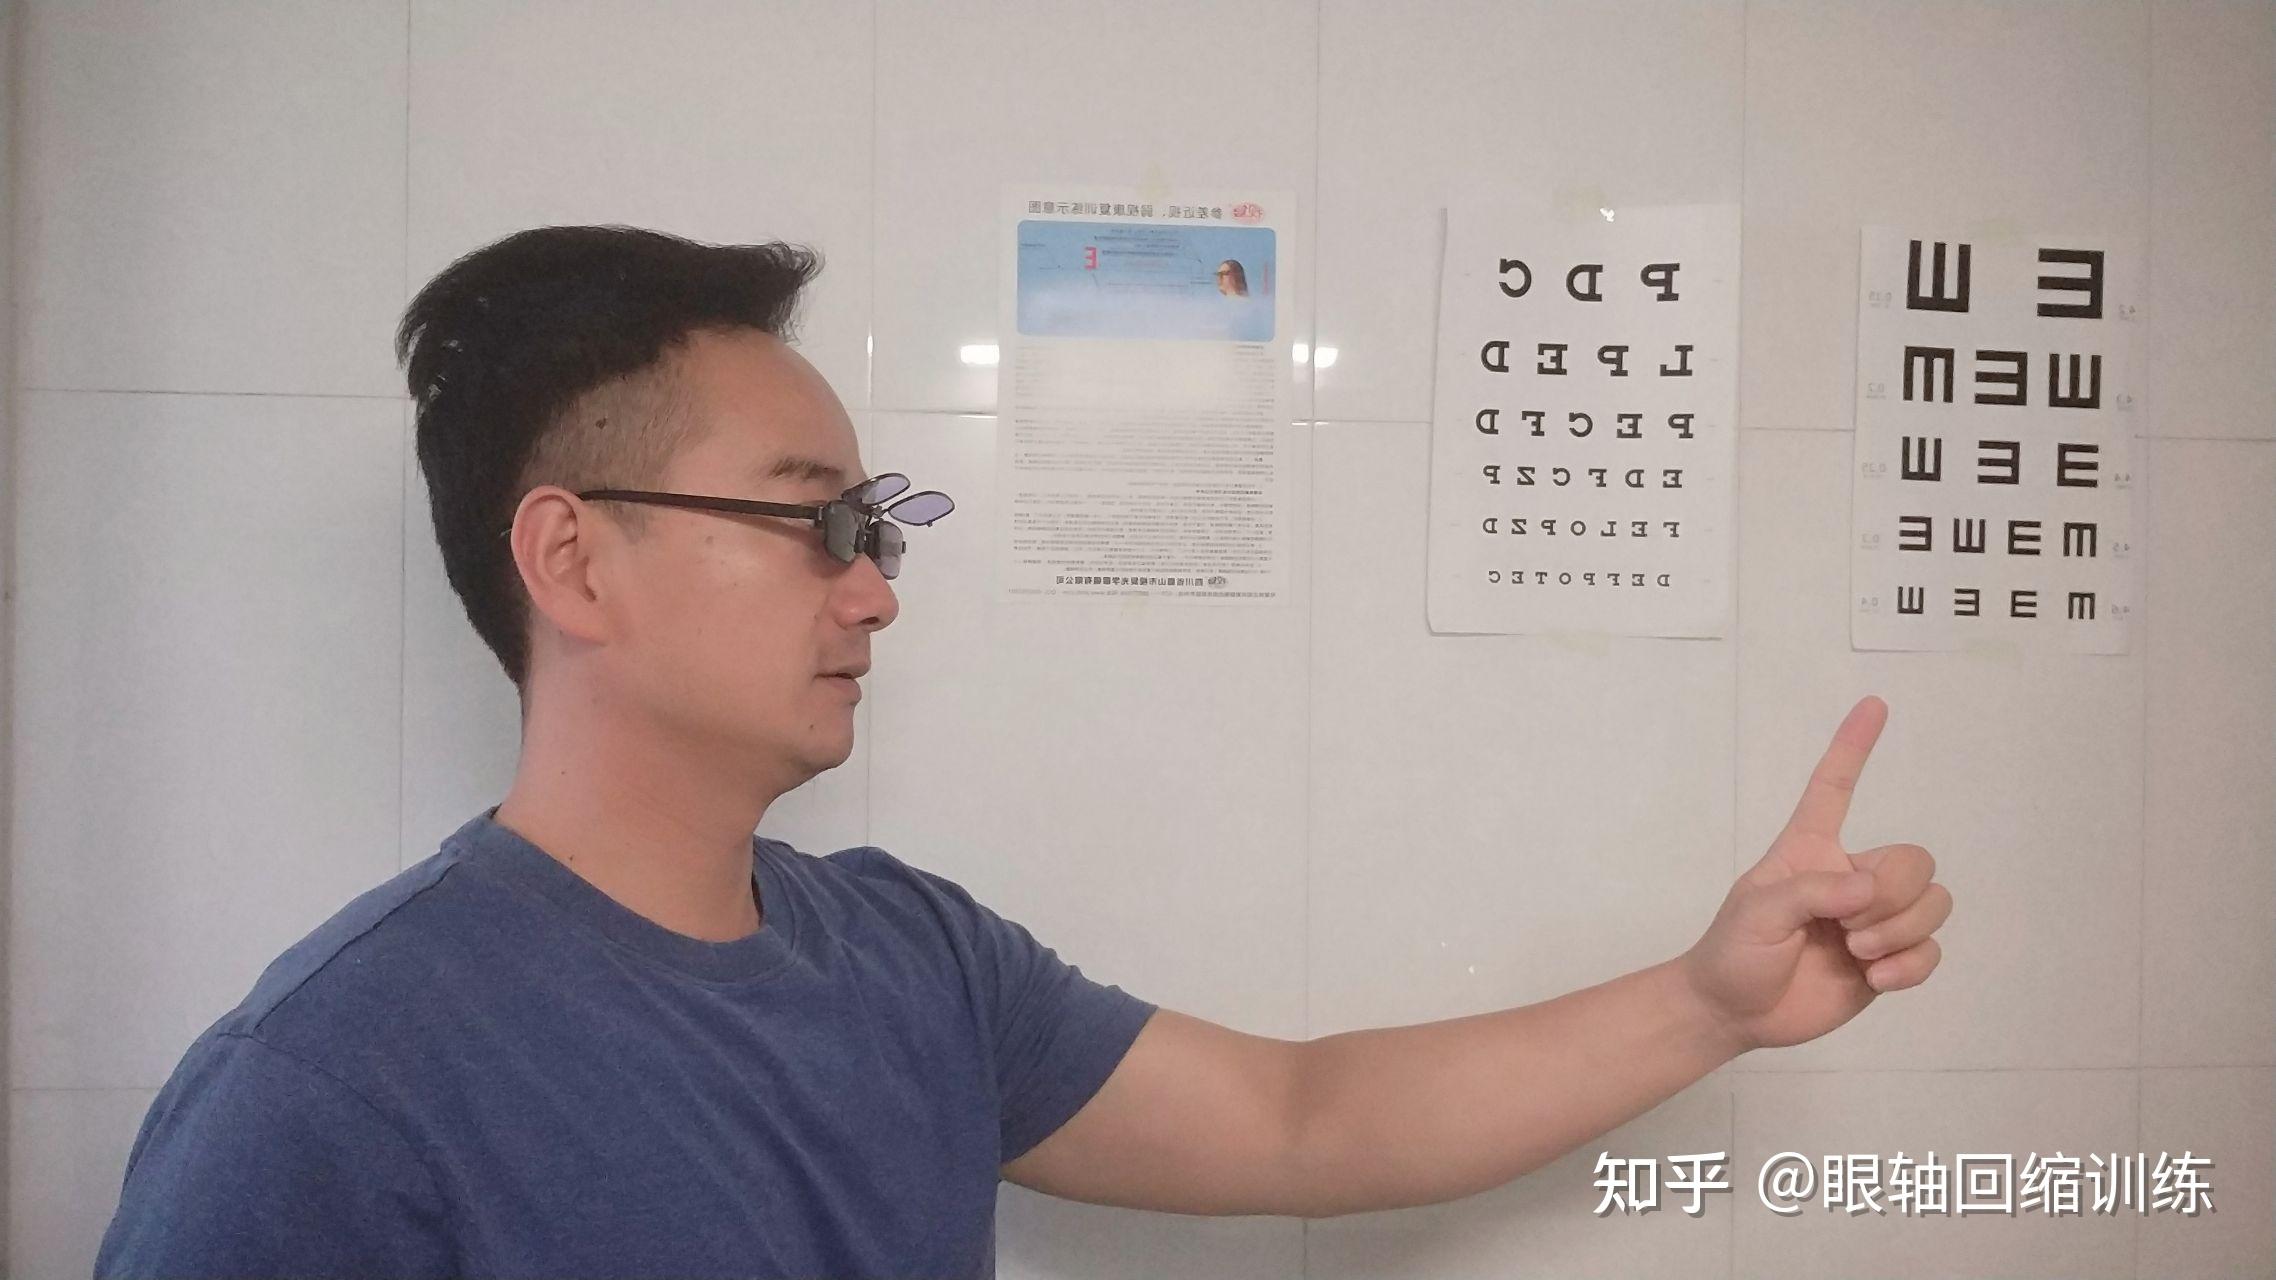 新版眼保健操挂图眼保健操图解挂图新版学生视力表操作示意图3米-阿里巴巴